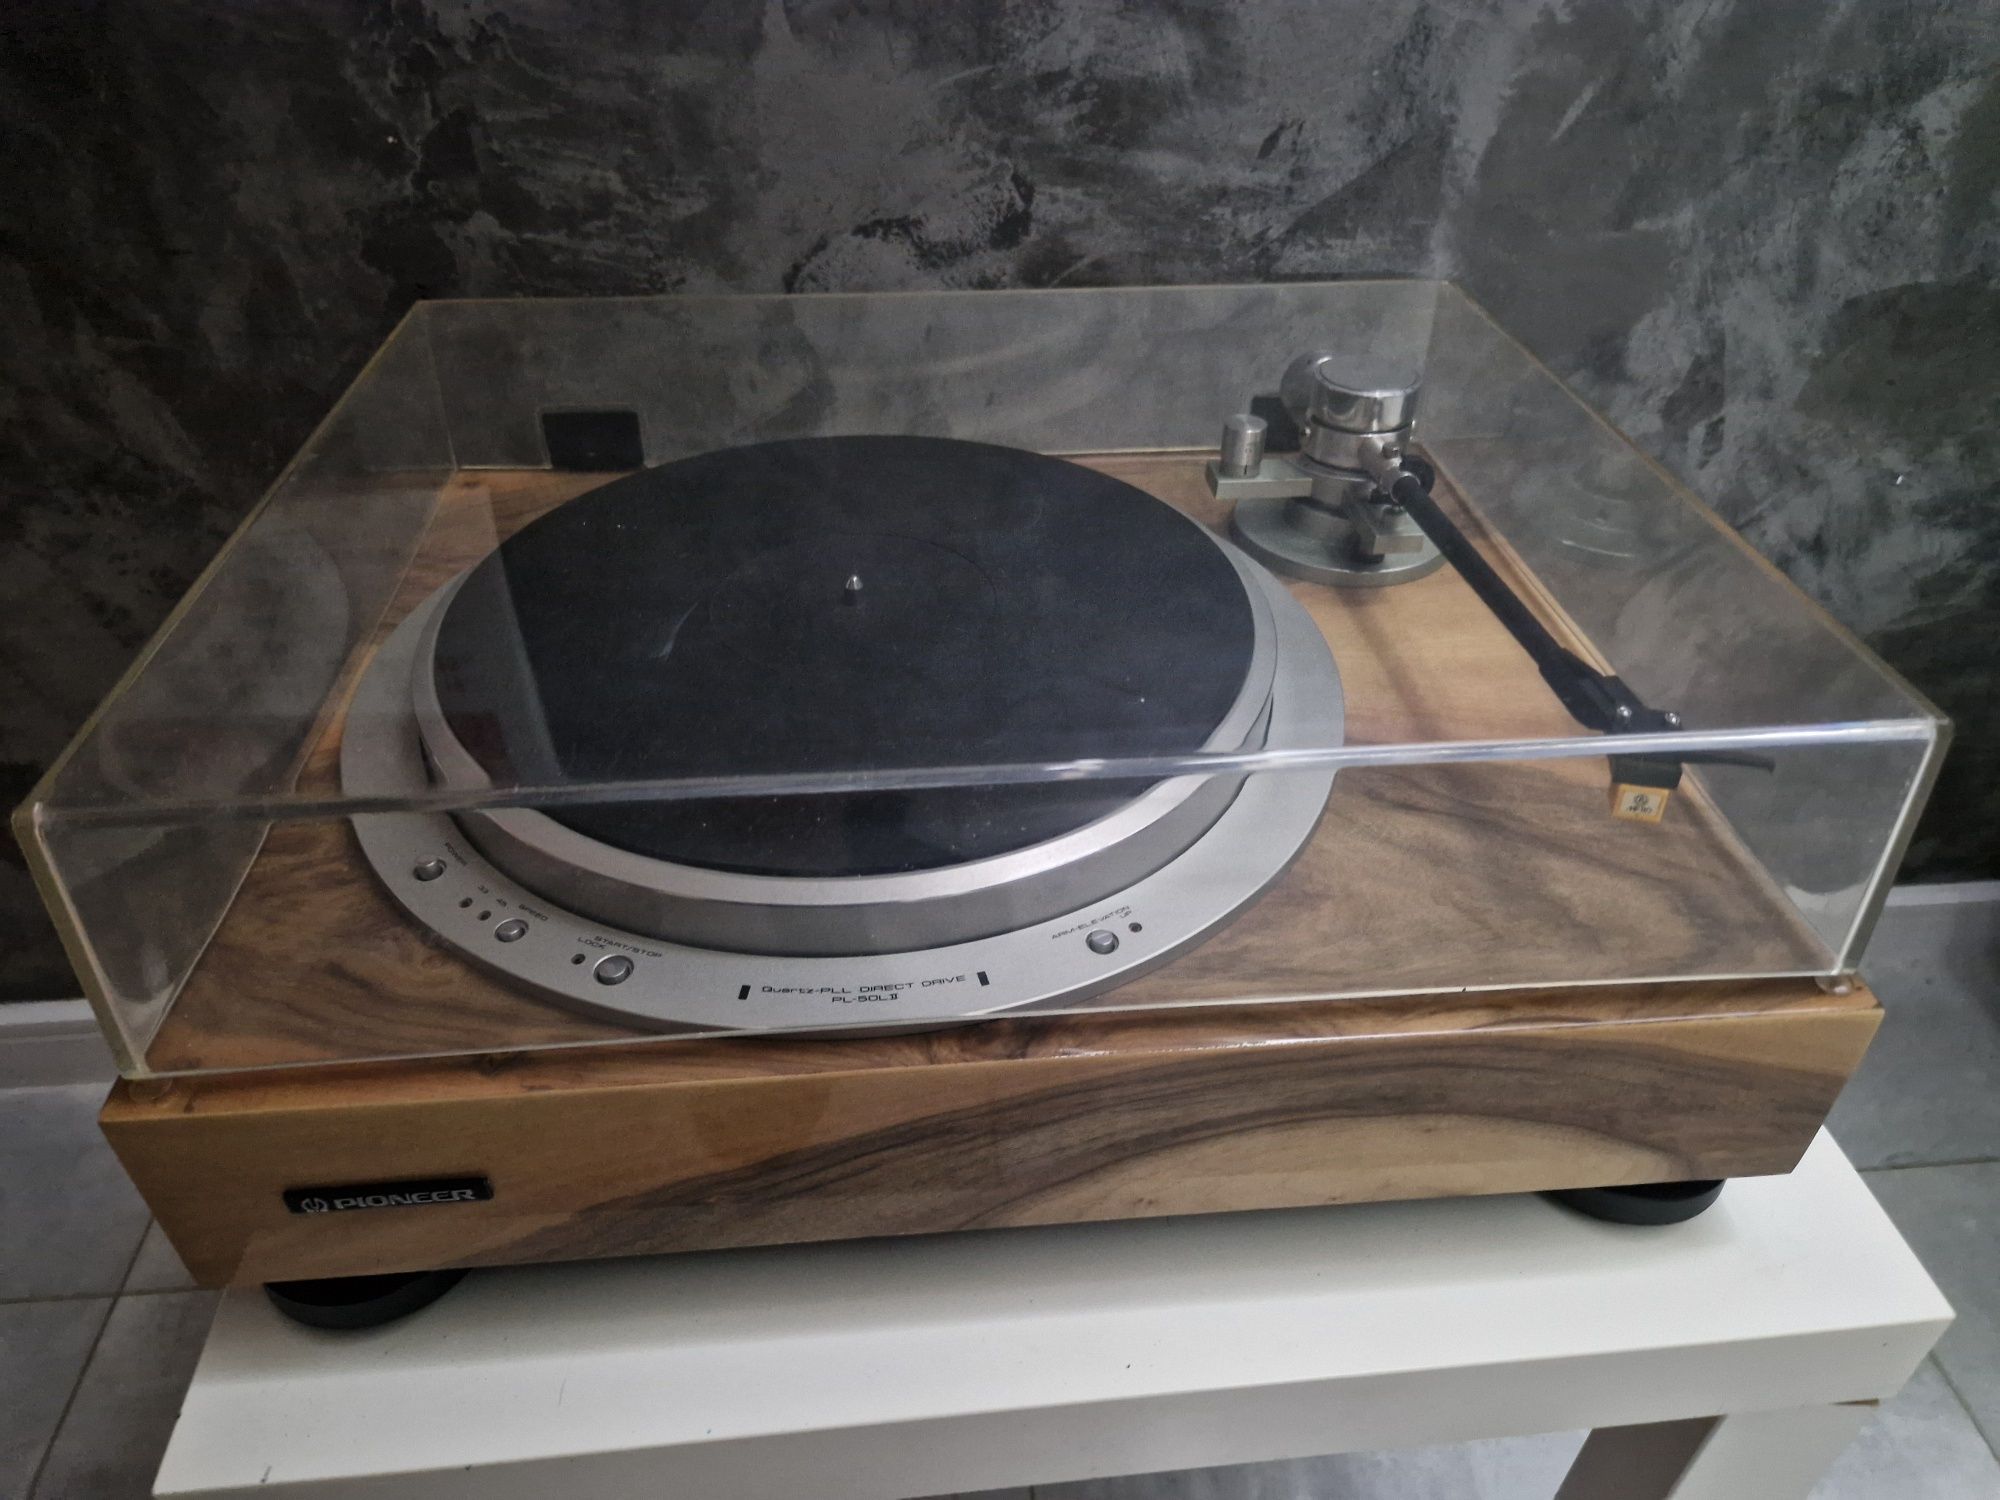 Gramofon pioneer PL 50ll w pìęknym drewnianym naturalnym fornirze